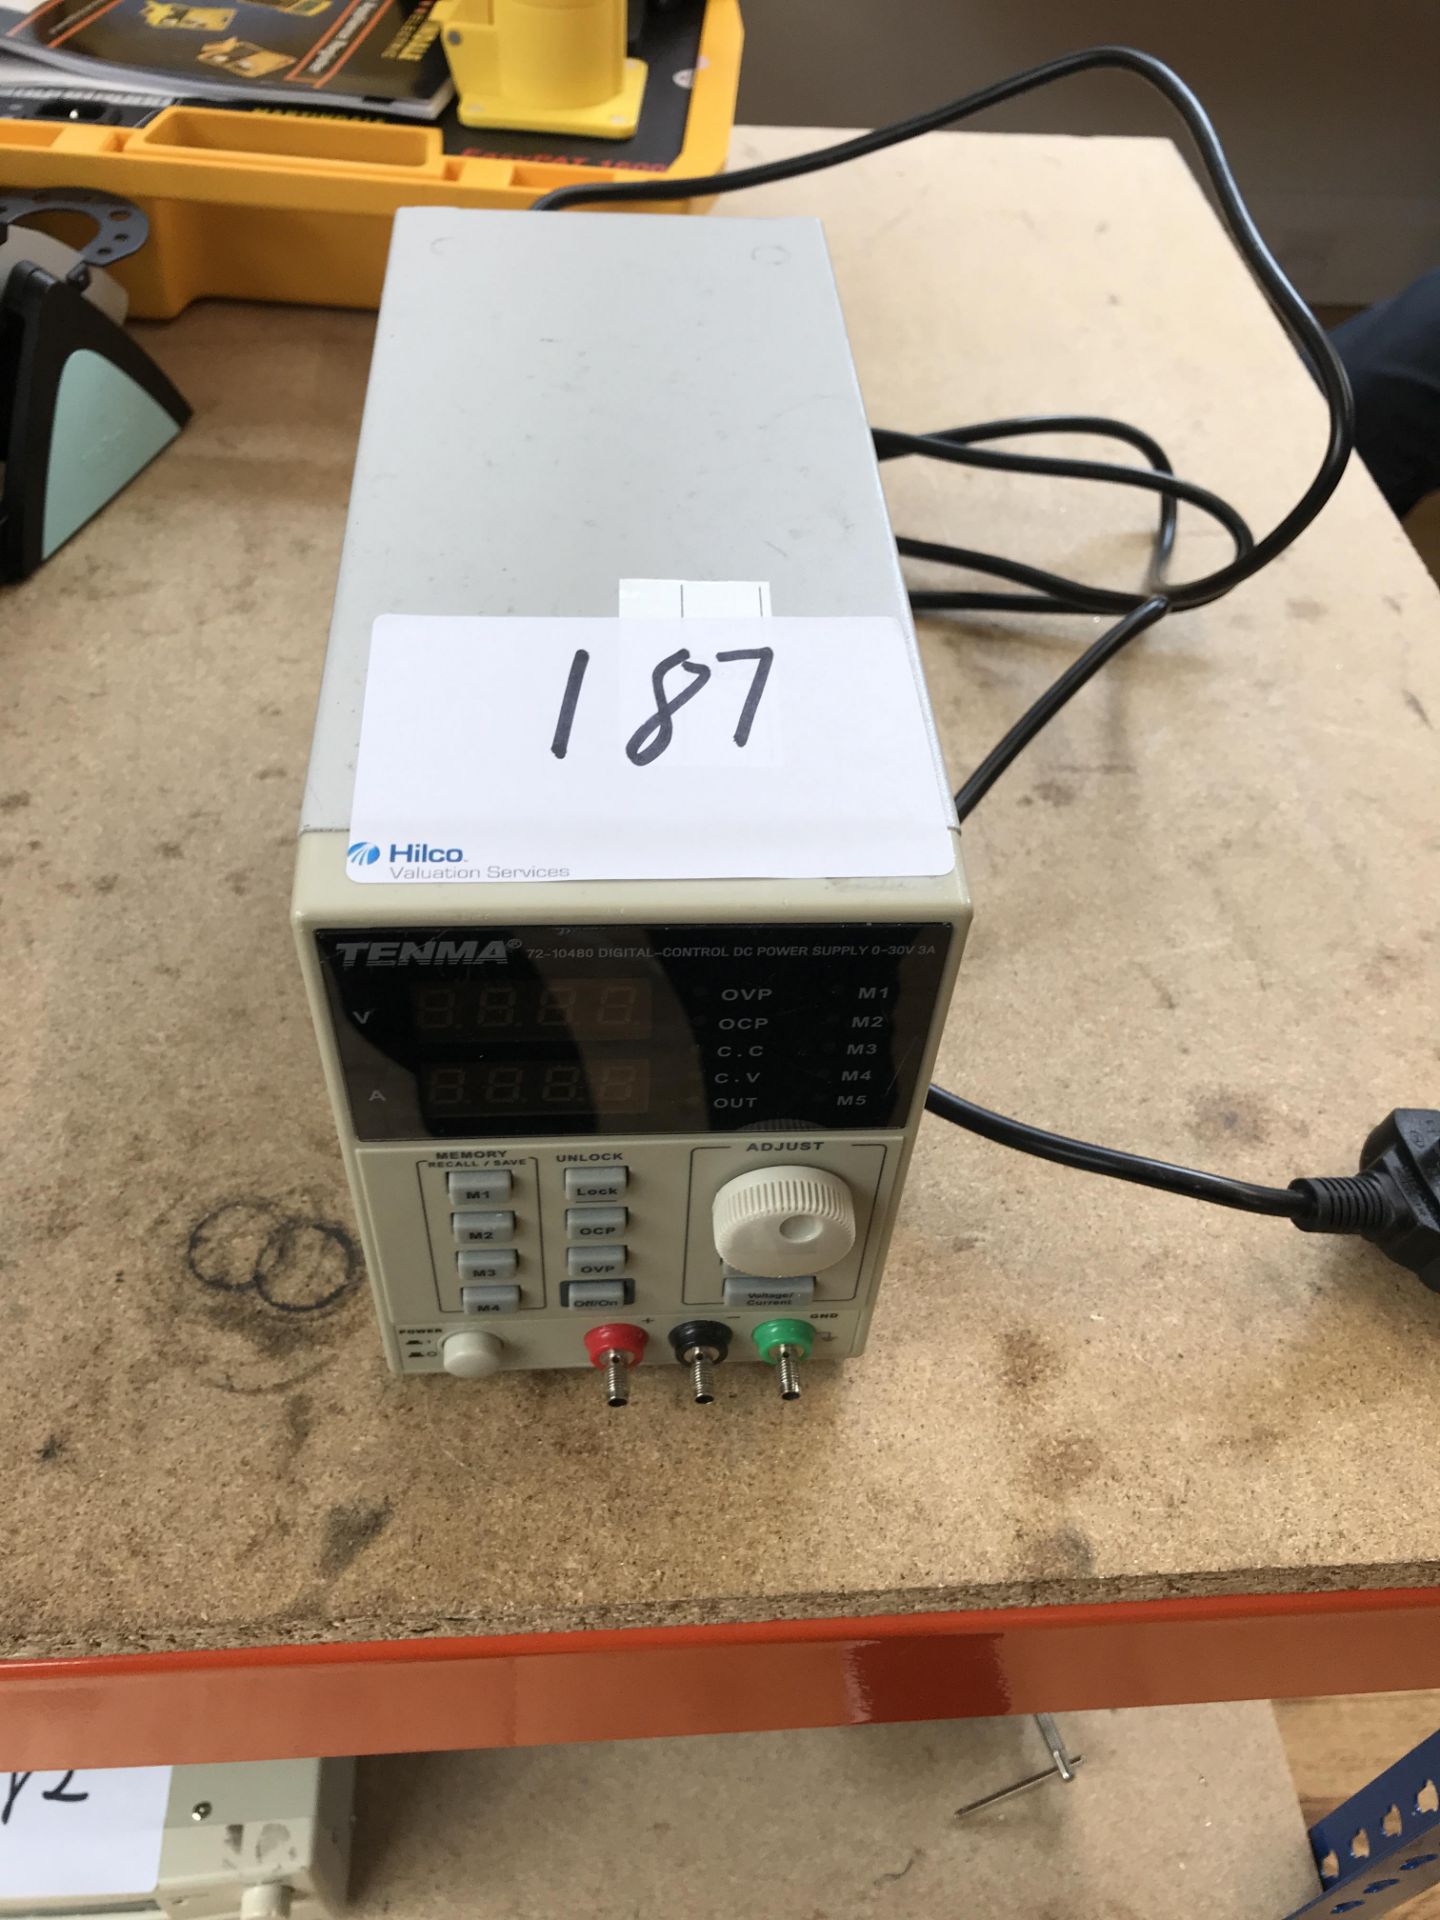 1, Tenma 72-10480 Digital Control DC Power Supply 0-30V 3A. Serial No. 003250045704